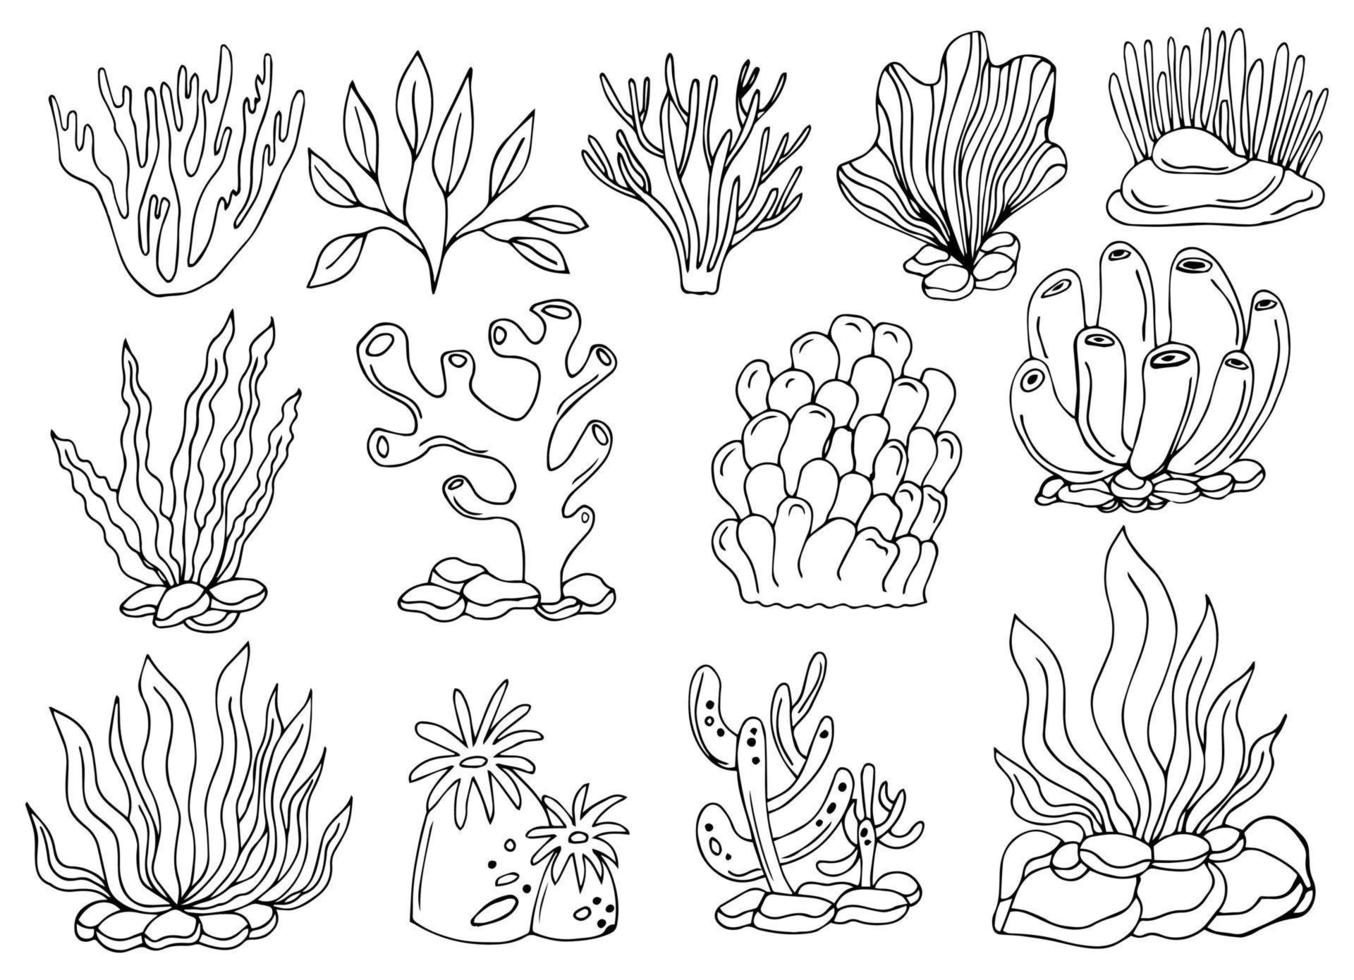 corales y algas marinas dibujadas a mano, garabatos, conjunto de vectores de estilo boceto